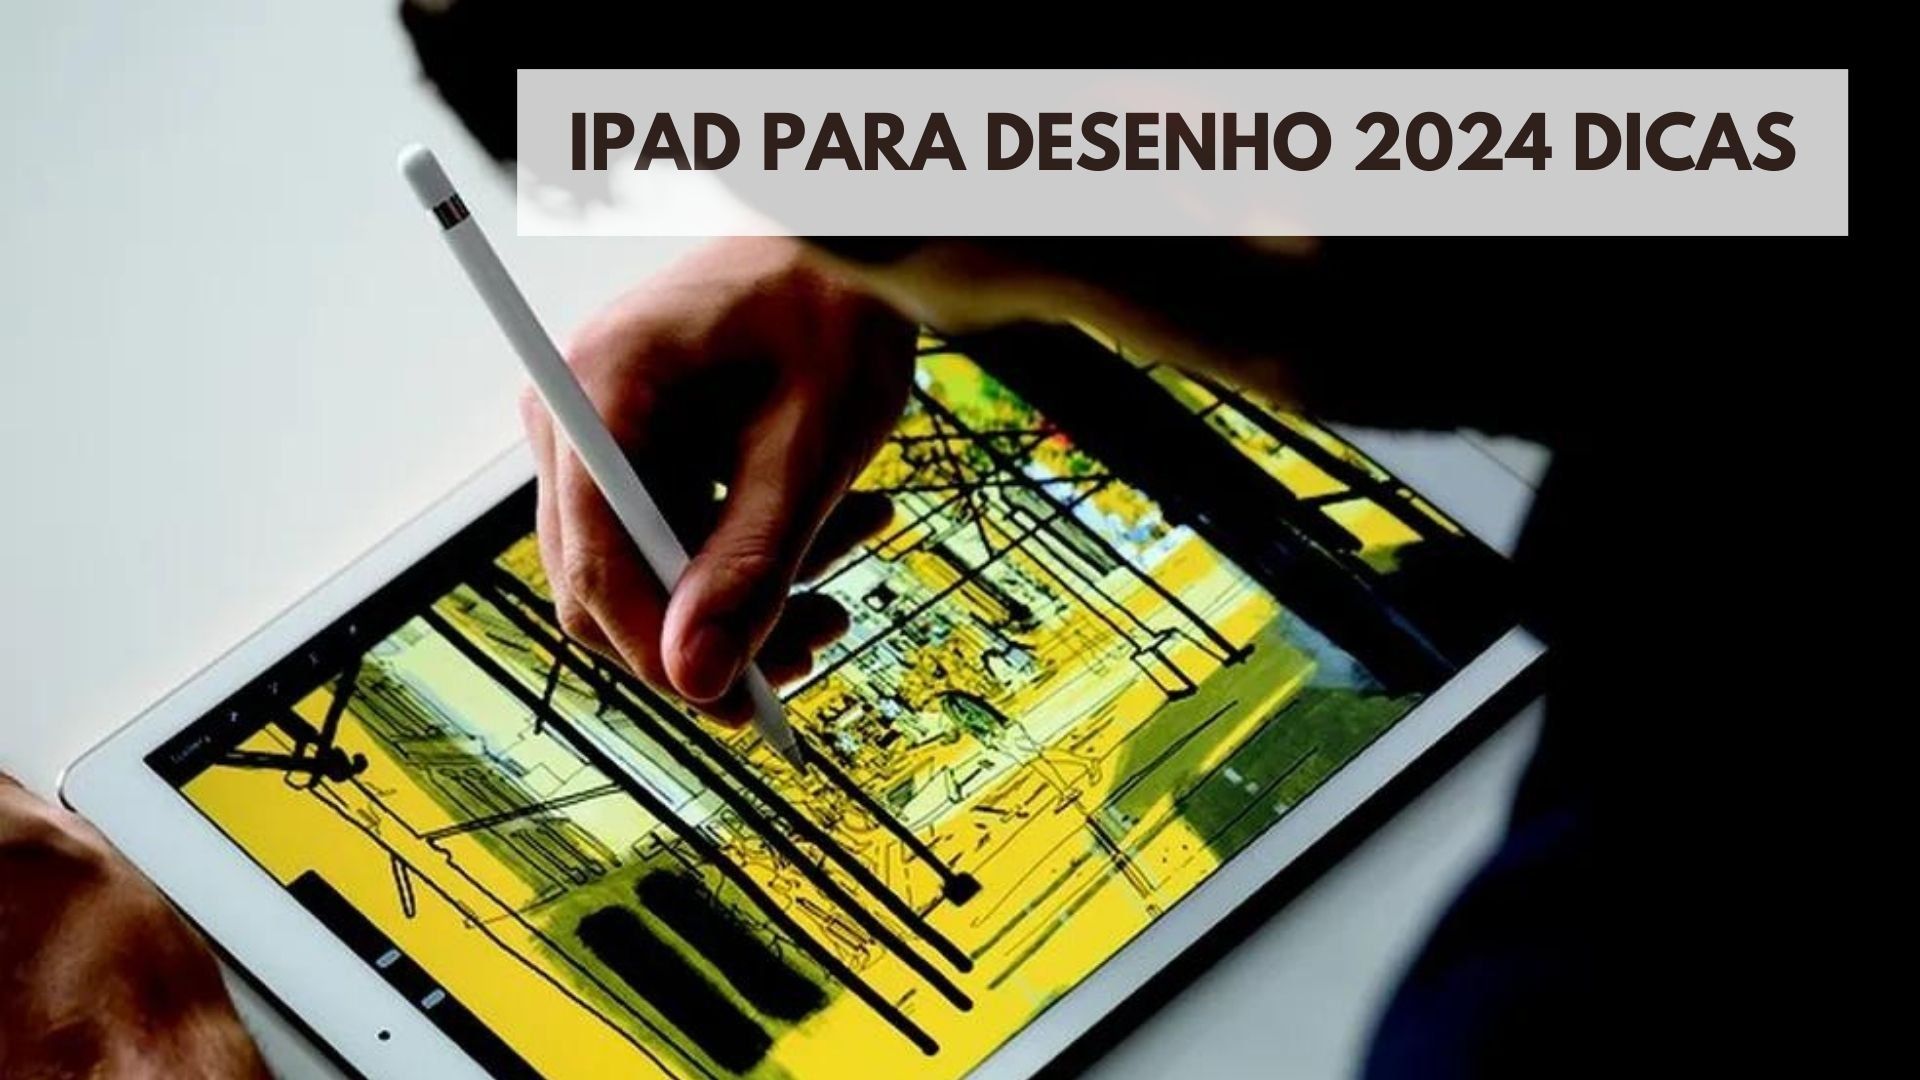 iPad para desenho 2024 dicas